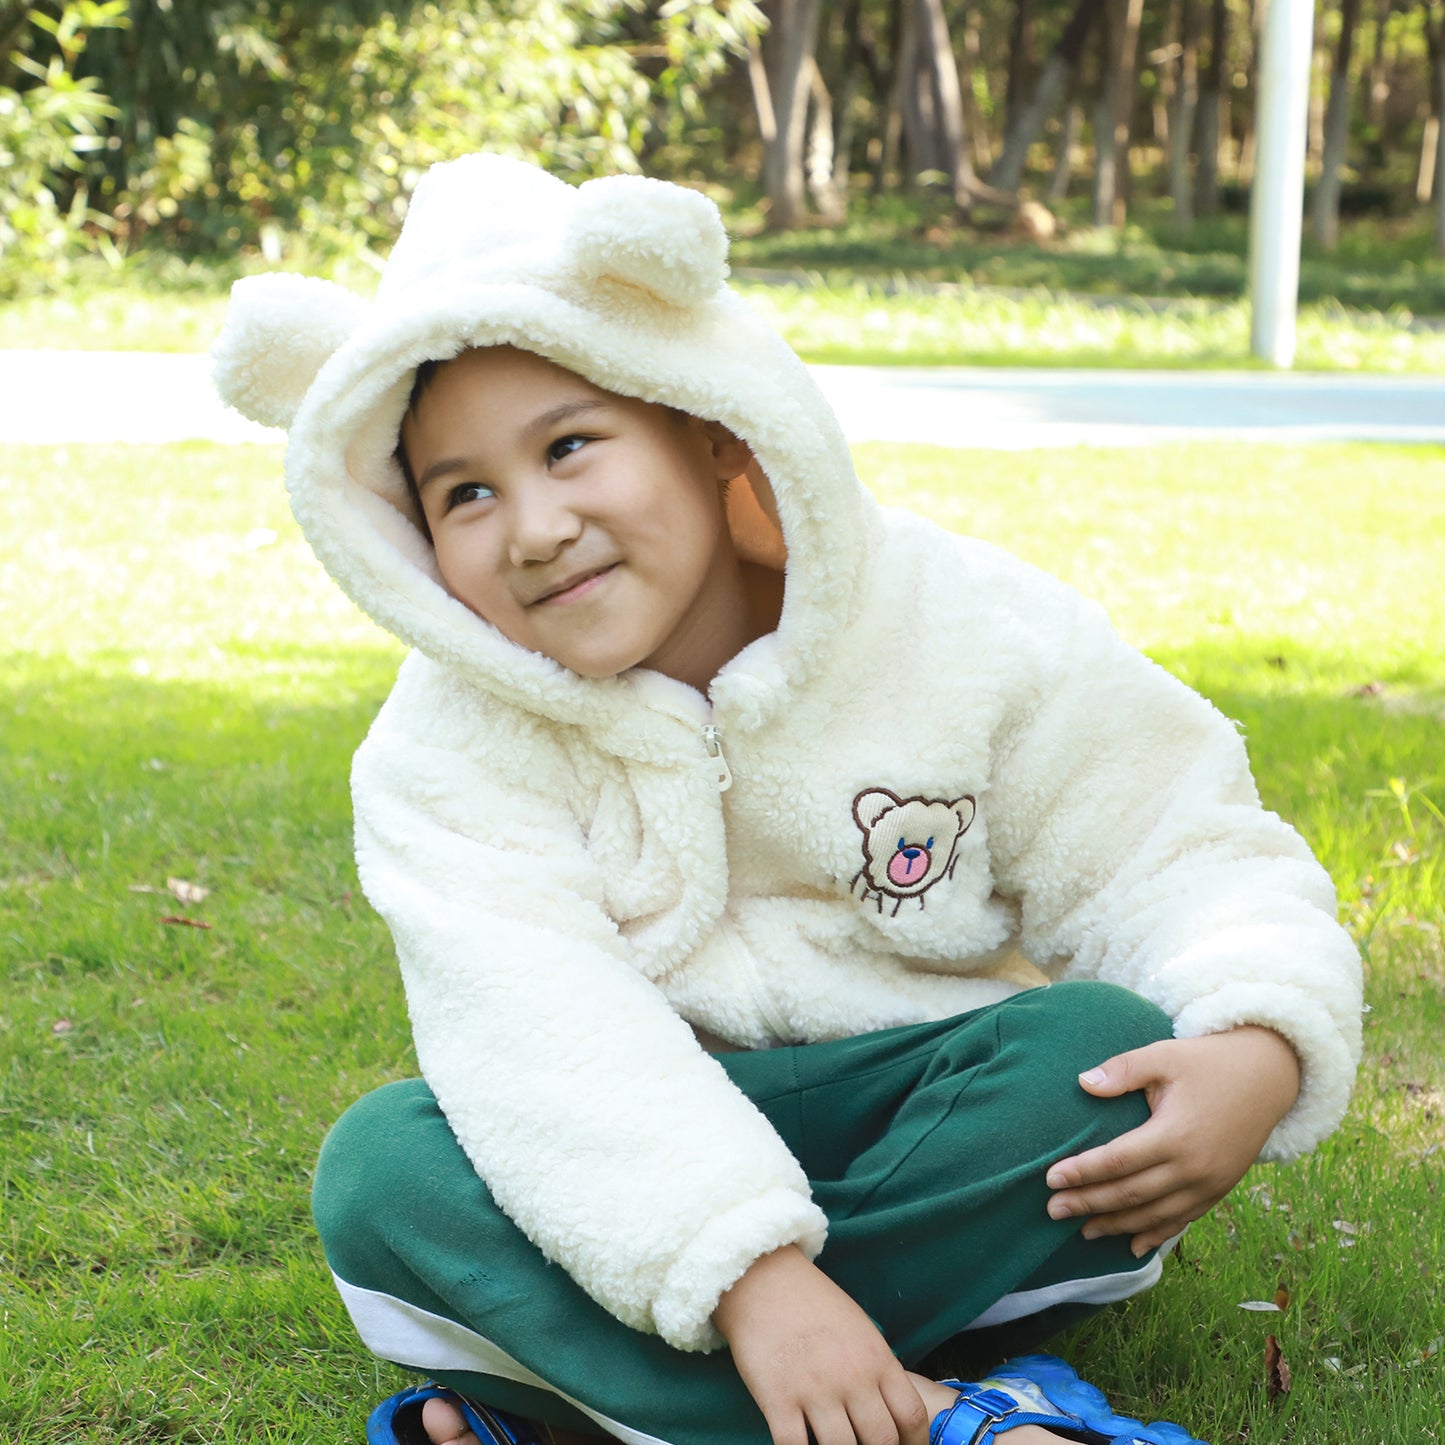 NinkyNonk Toddler Winter Fleece Jacket Unisex Baby Boy Girl Warm Hooded Coat with Sherpa Lining